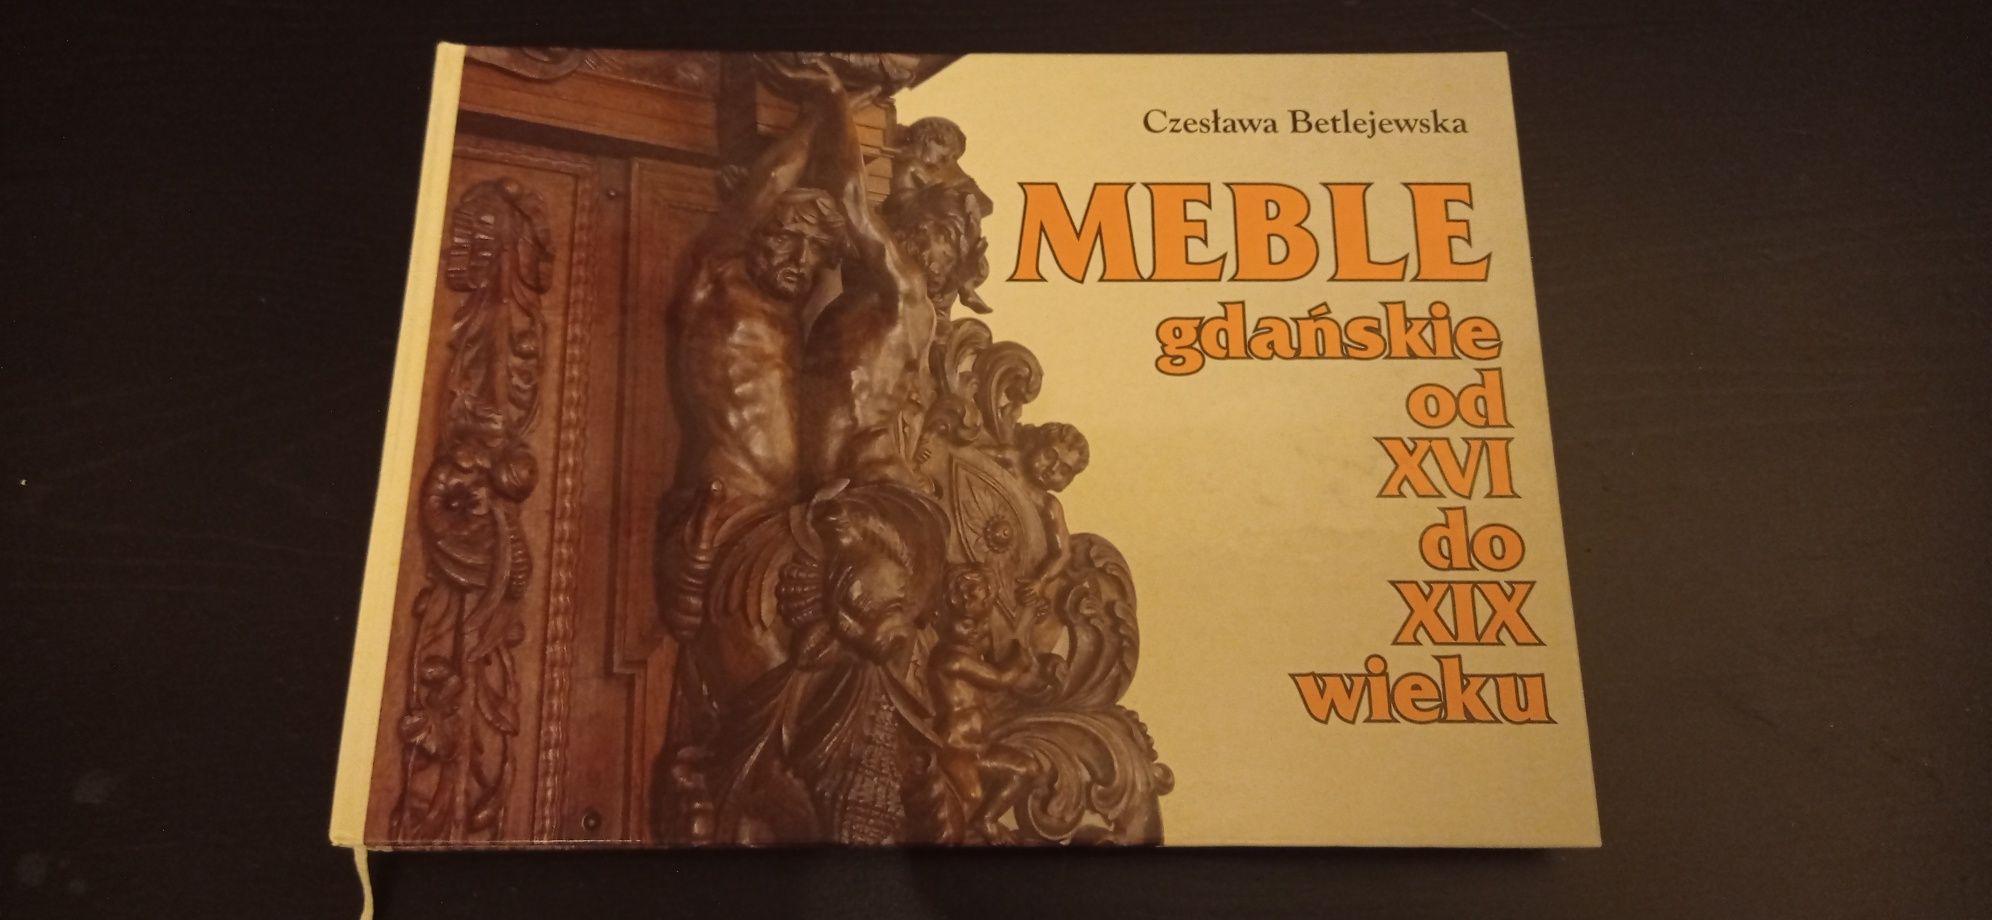 Album Meble Gdańskie XVI-XIX wiek